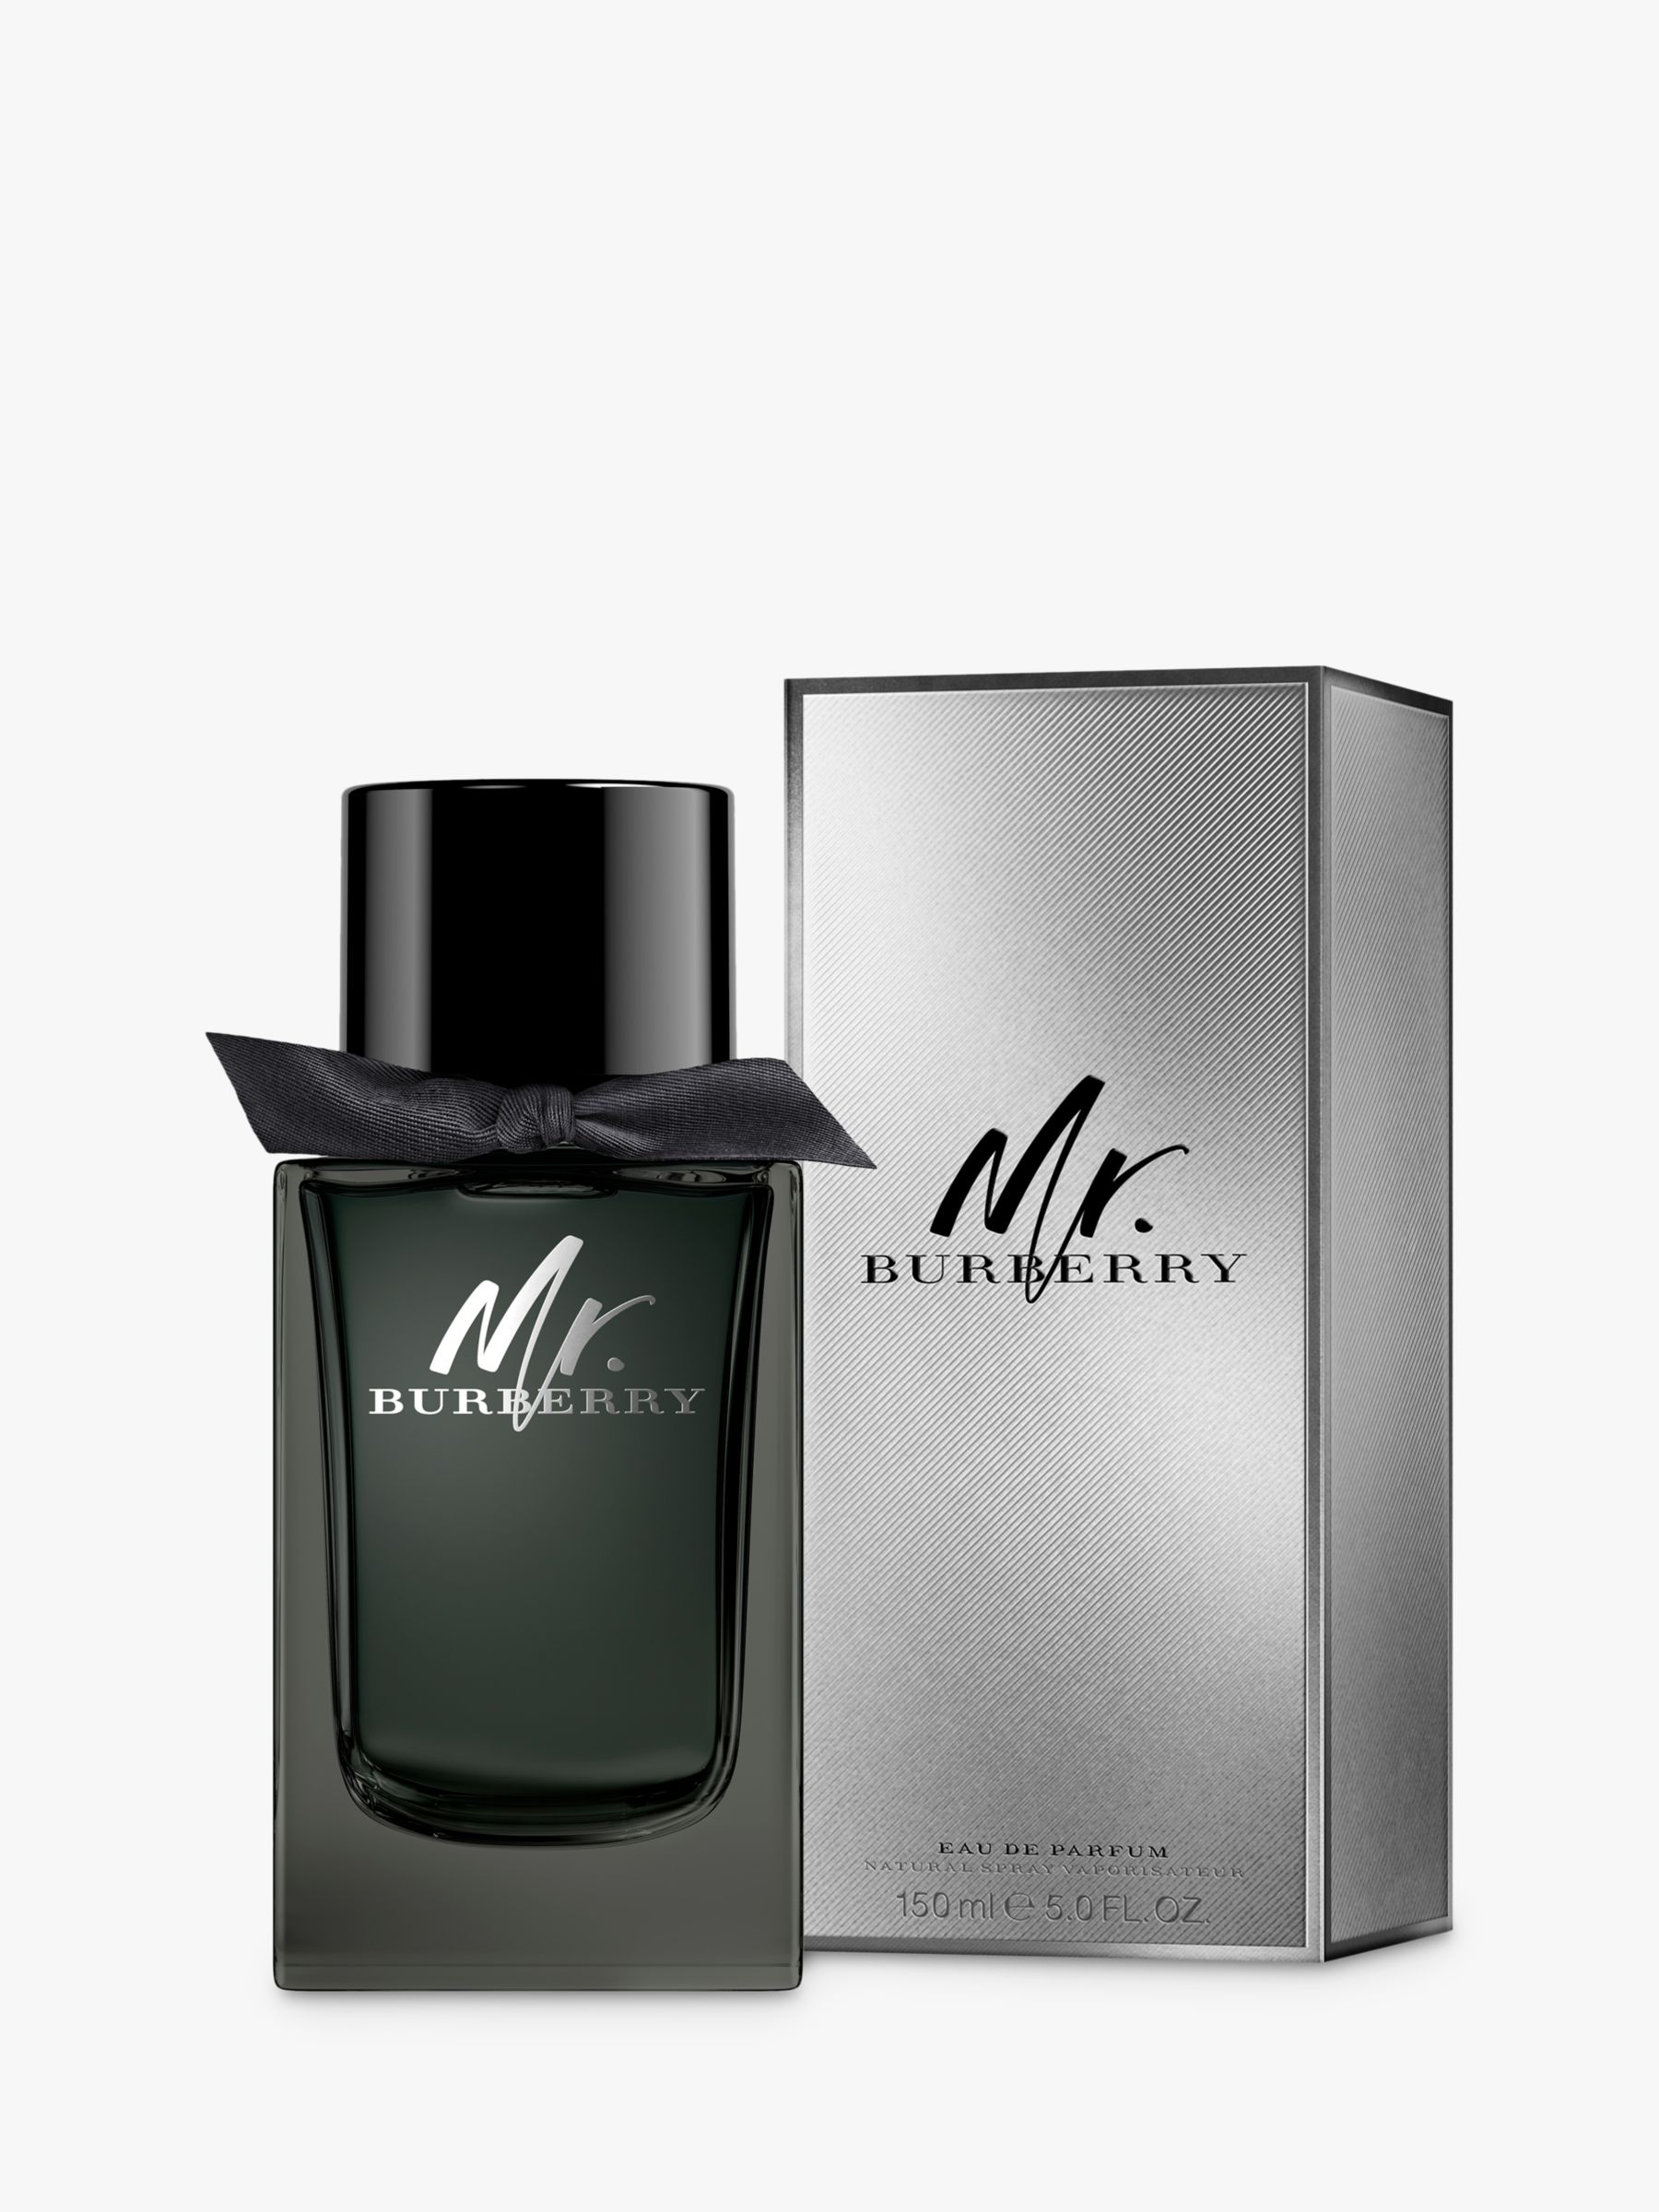 Burberry Mr. Burberry Eau de Parfum at 